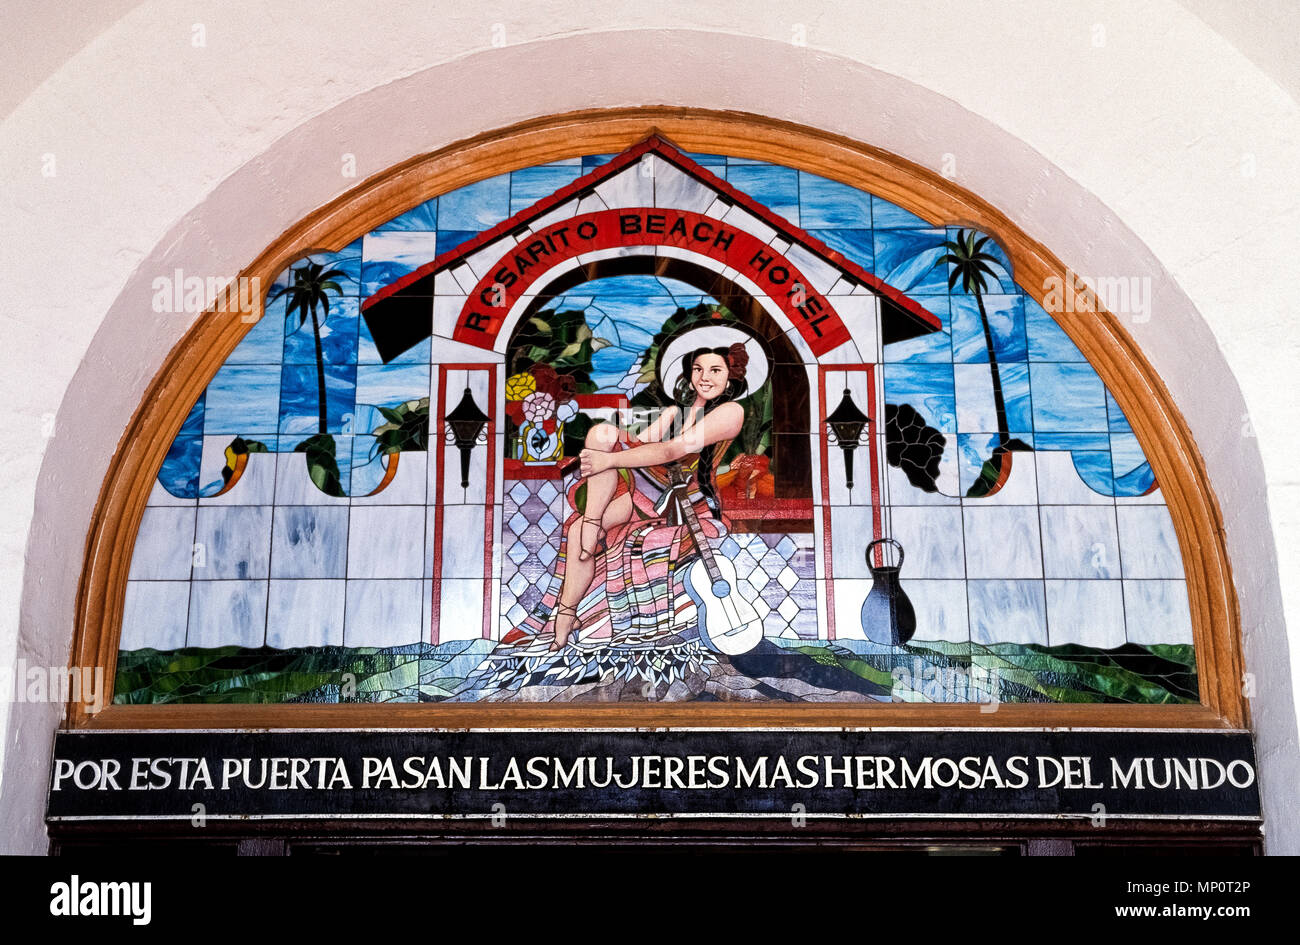 Historique un vitrail et un salut en espagnol -- 'par cette porte passer les plus belles femmes du monde" -- accueille les clients au-dessus de l'entrée de l'Archway monument Rosarito Beach Hôtel qui a ouvert dans les années 20, quelques kilomètres au sud de la frontière entre les États-Unis et le Mexique près de Tijuana en Basse Californie, Mexique, Amérique du Nord. La femelle en vedette dans l'œuvre d'art est l'actrice mexicaine Maria Luisa Chabert, future épouse de l'homme qui plus tard a acheté les 10 chambres de l'hôtellerie et a commencé sa croissance à l'oceanfront resort moderne qu'il est aujourd'hui. Banque D'Images